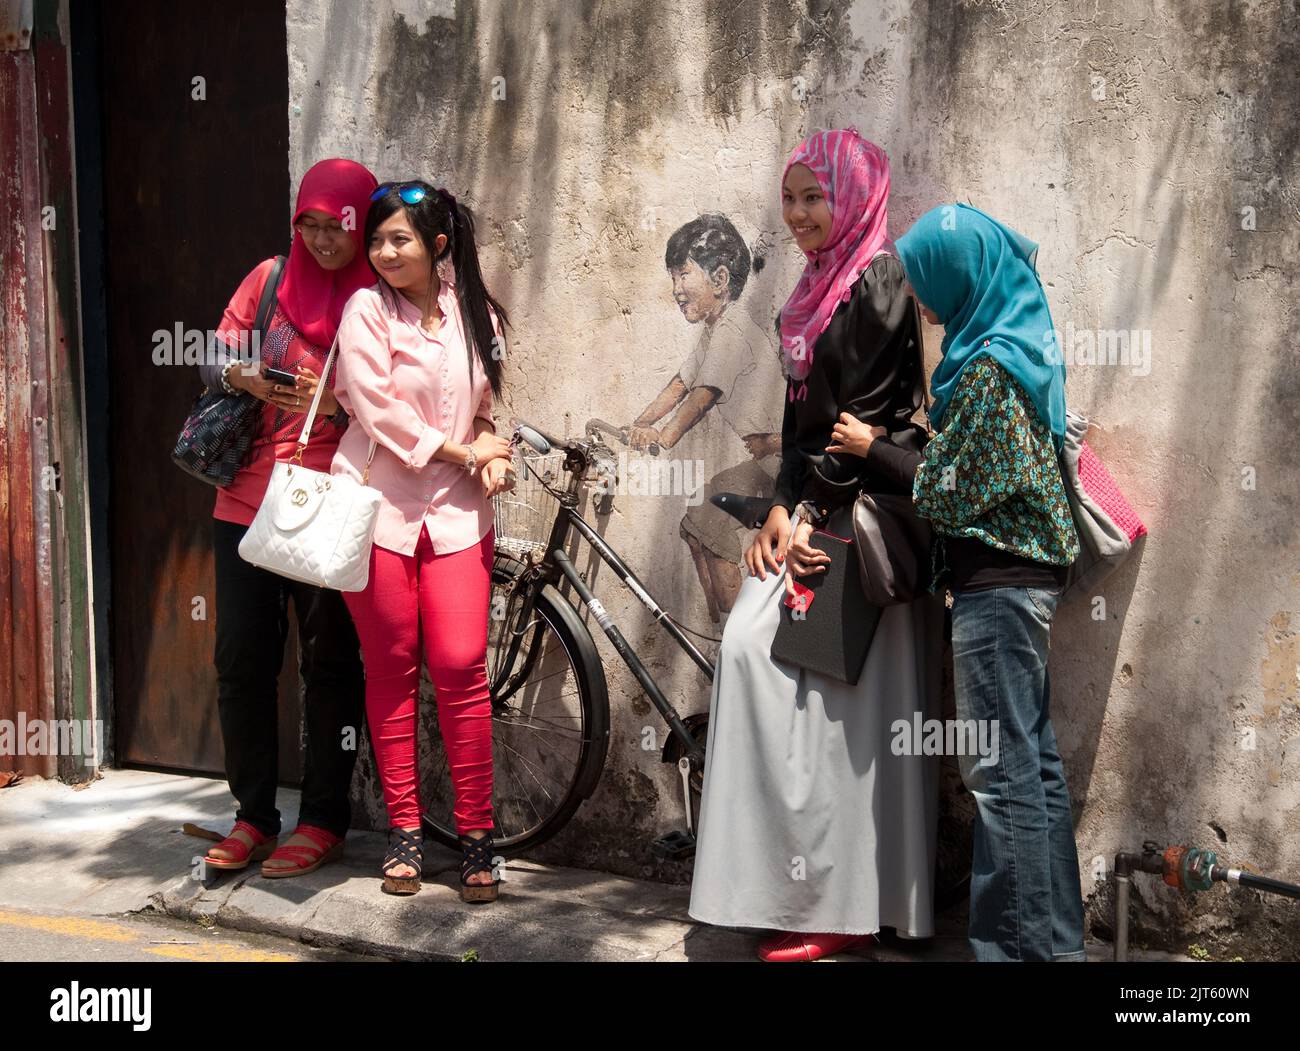 Posar alrededor de Arte en la Calle, Ciudad de George, Penang, Malasia, Asia. Las jóvenes musulmanas se disfrutan y se divierten. El arte callejero es muy común en G. Foto de stock